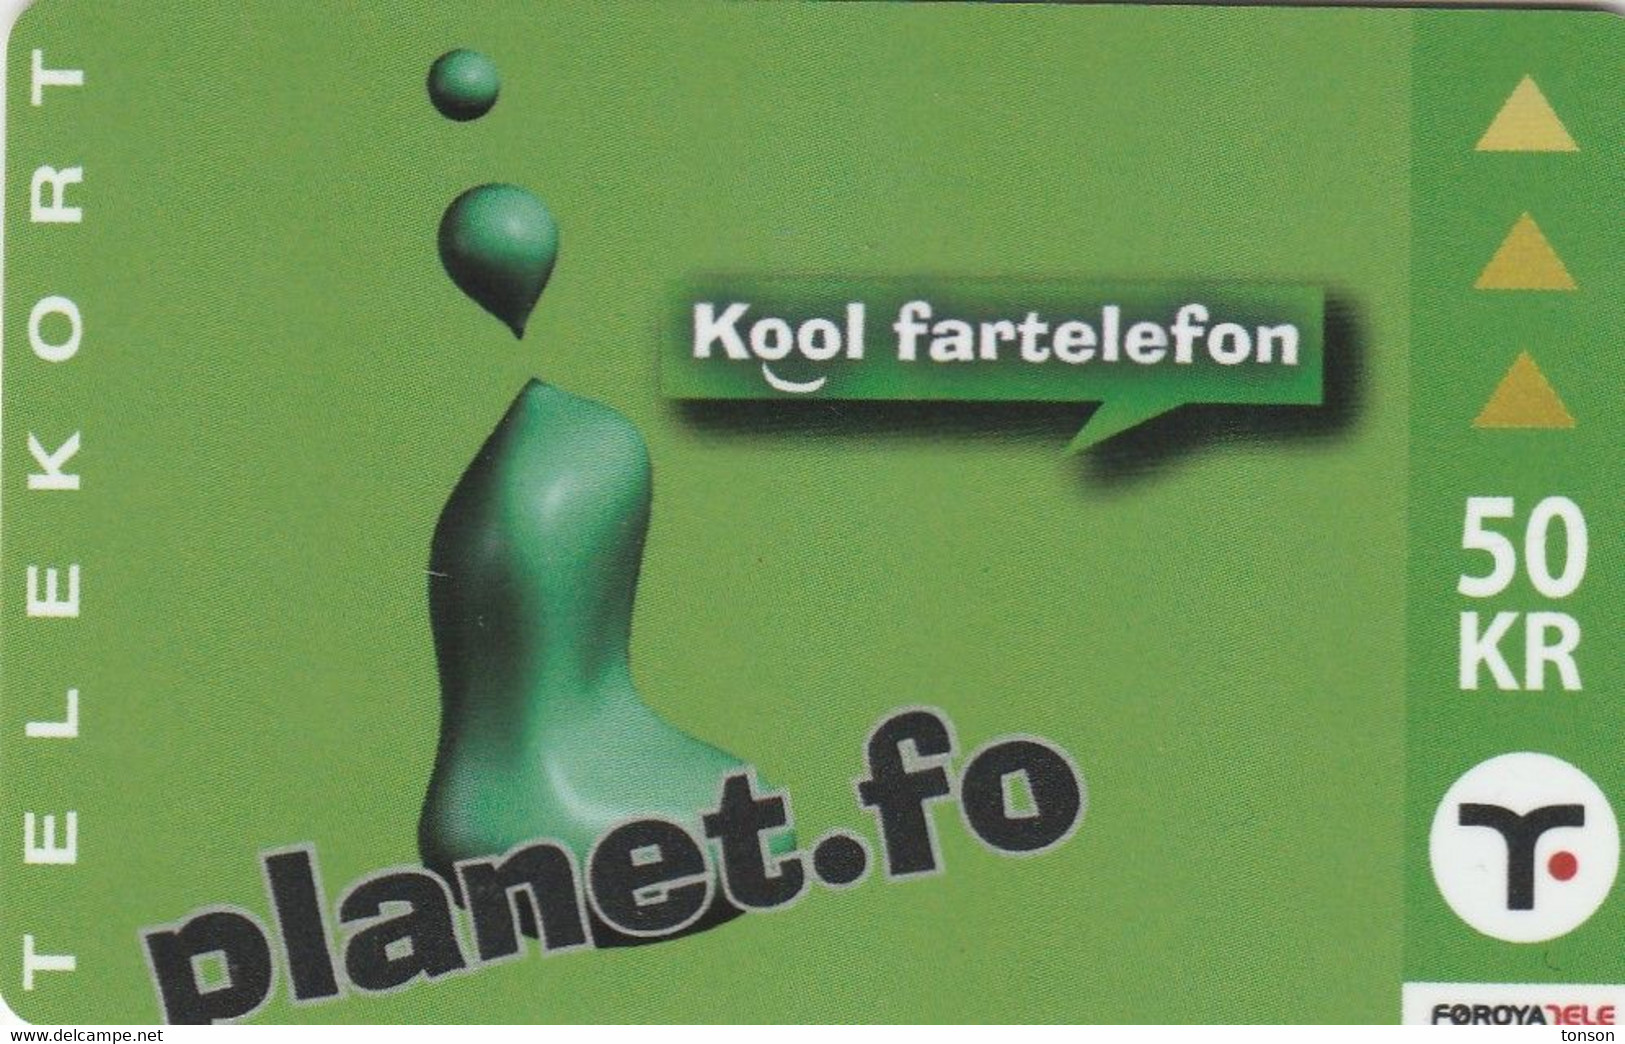 Faroe Islands, OR-003, 50 Kr ,  Planet.fo, Kool Fartelefon, 2 Scans. - Isole Faroe